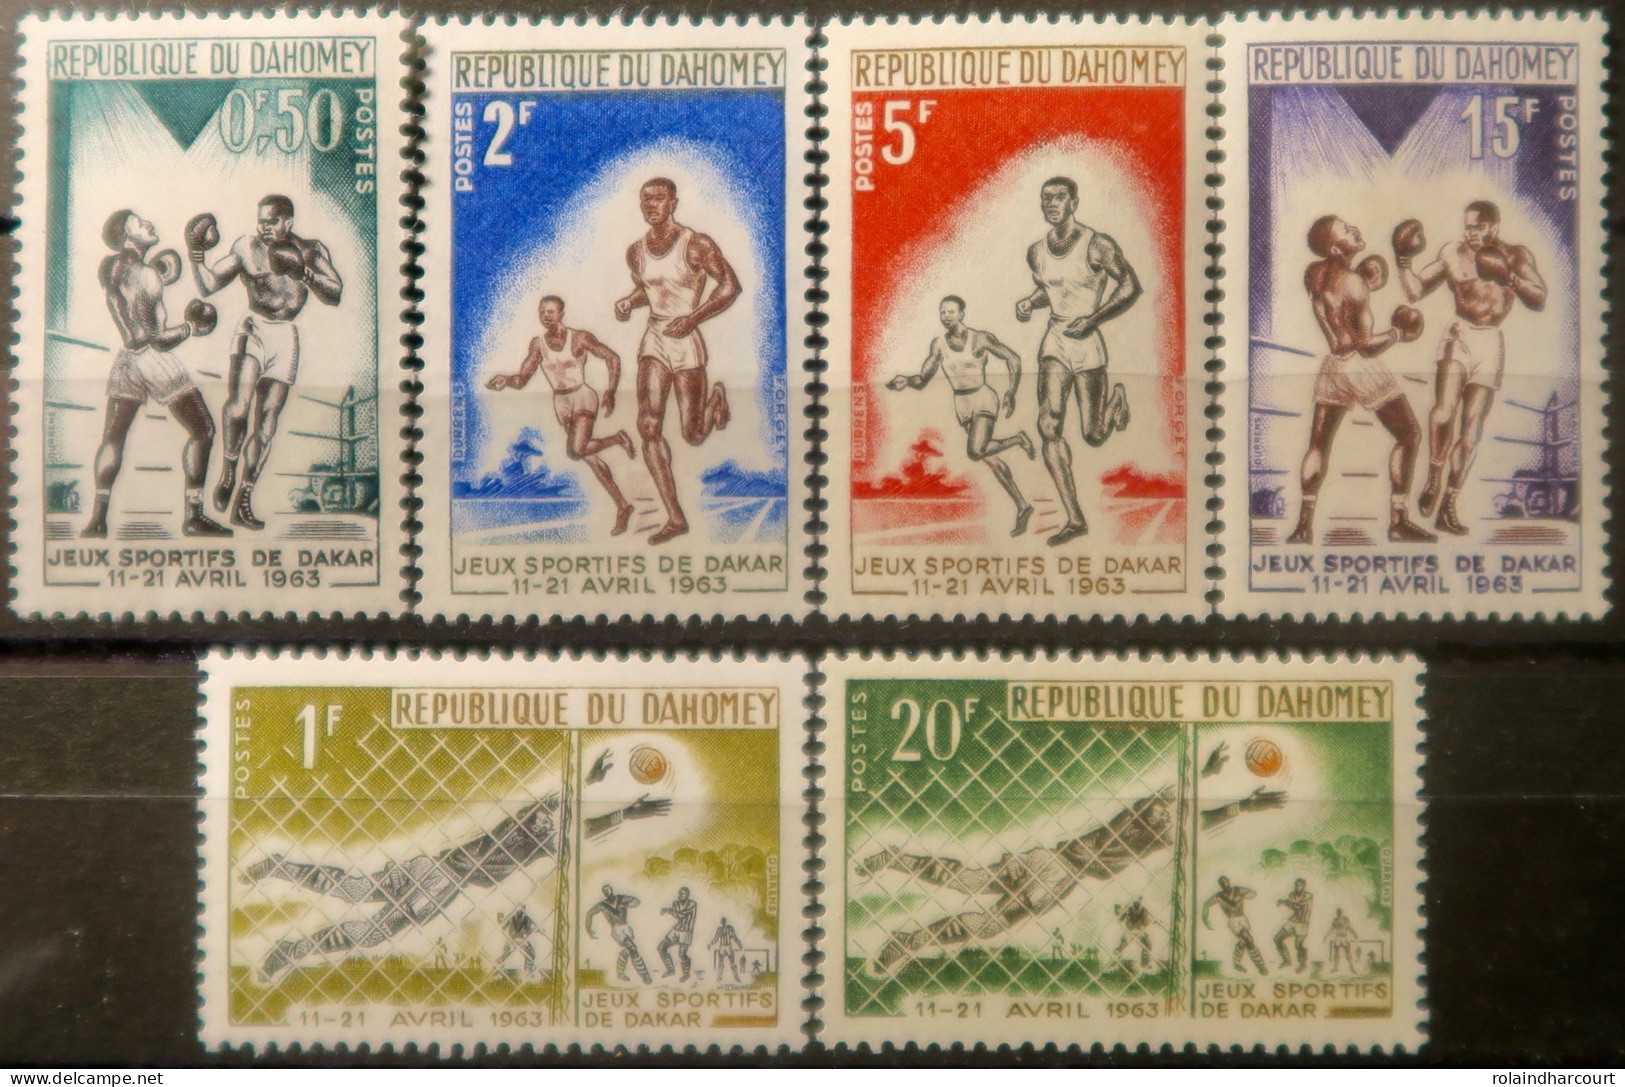 LP3844/2214 - DAHOMEY - 1963 - Jeux Sportifs De Dakar - SERIE COMPLETE - N°192 à 197 NEUFS** - Sonstige - Afrika